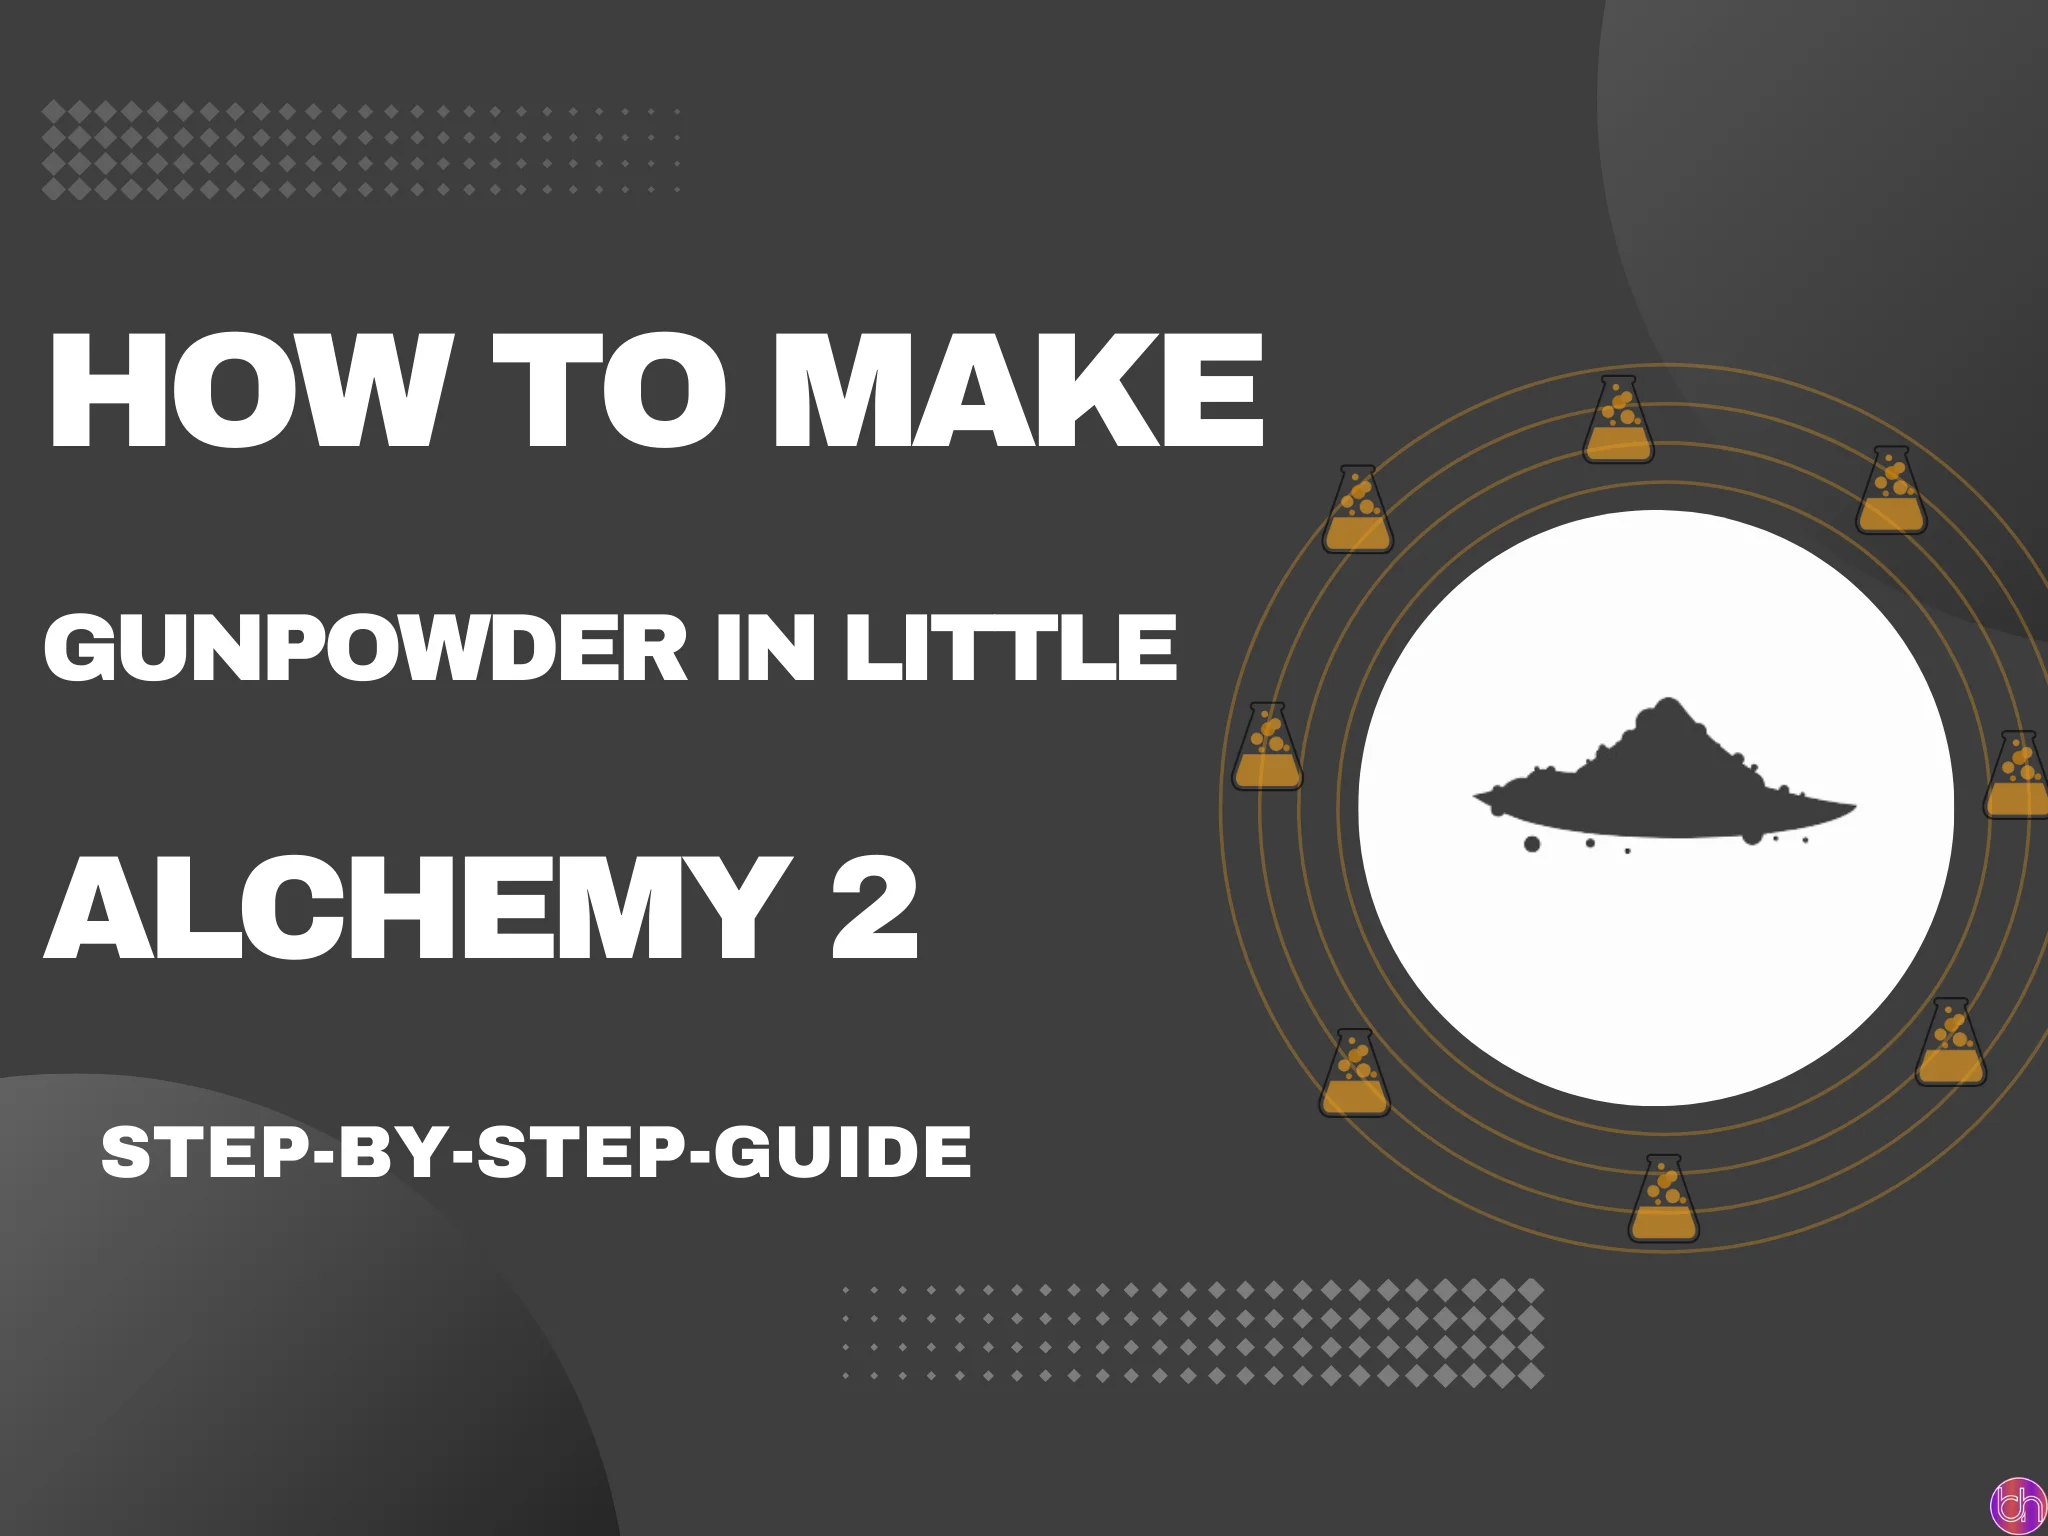 How to make Gunpowder in Little Alchemy 2